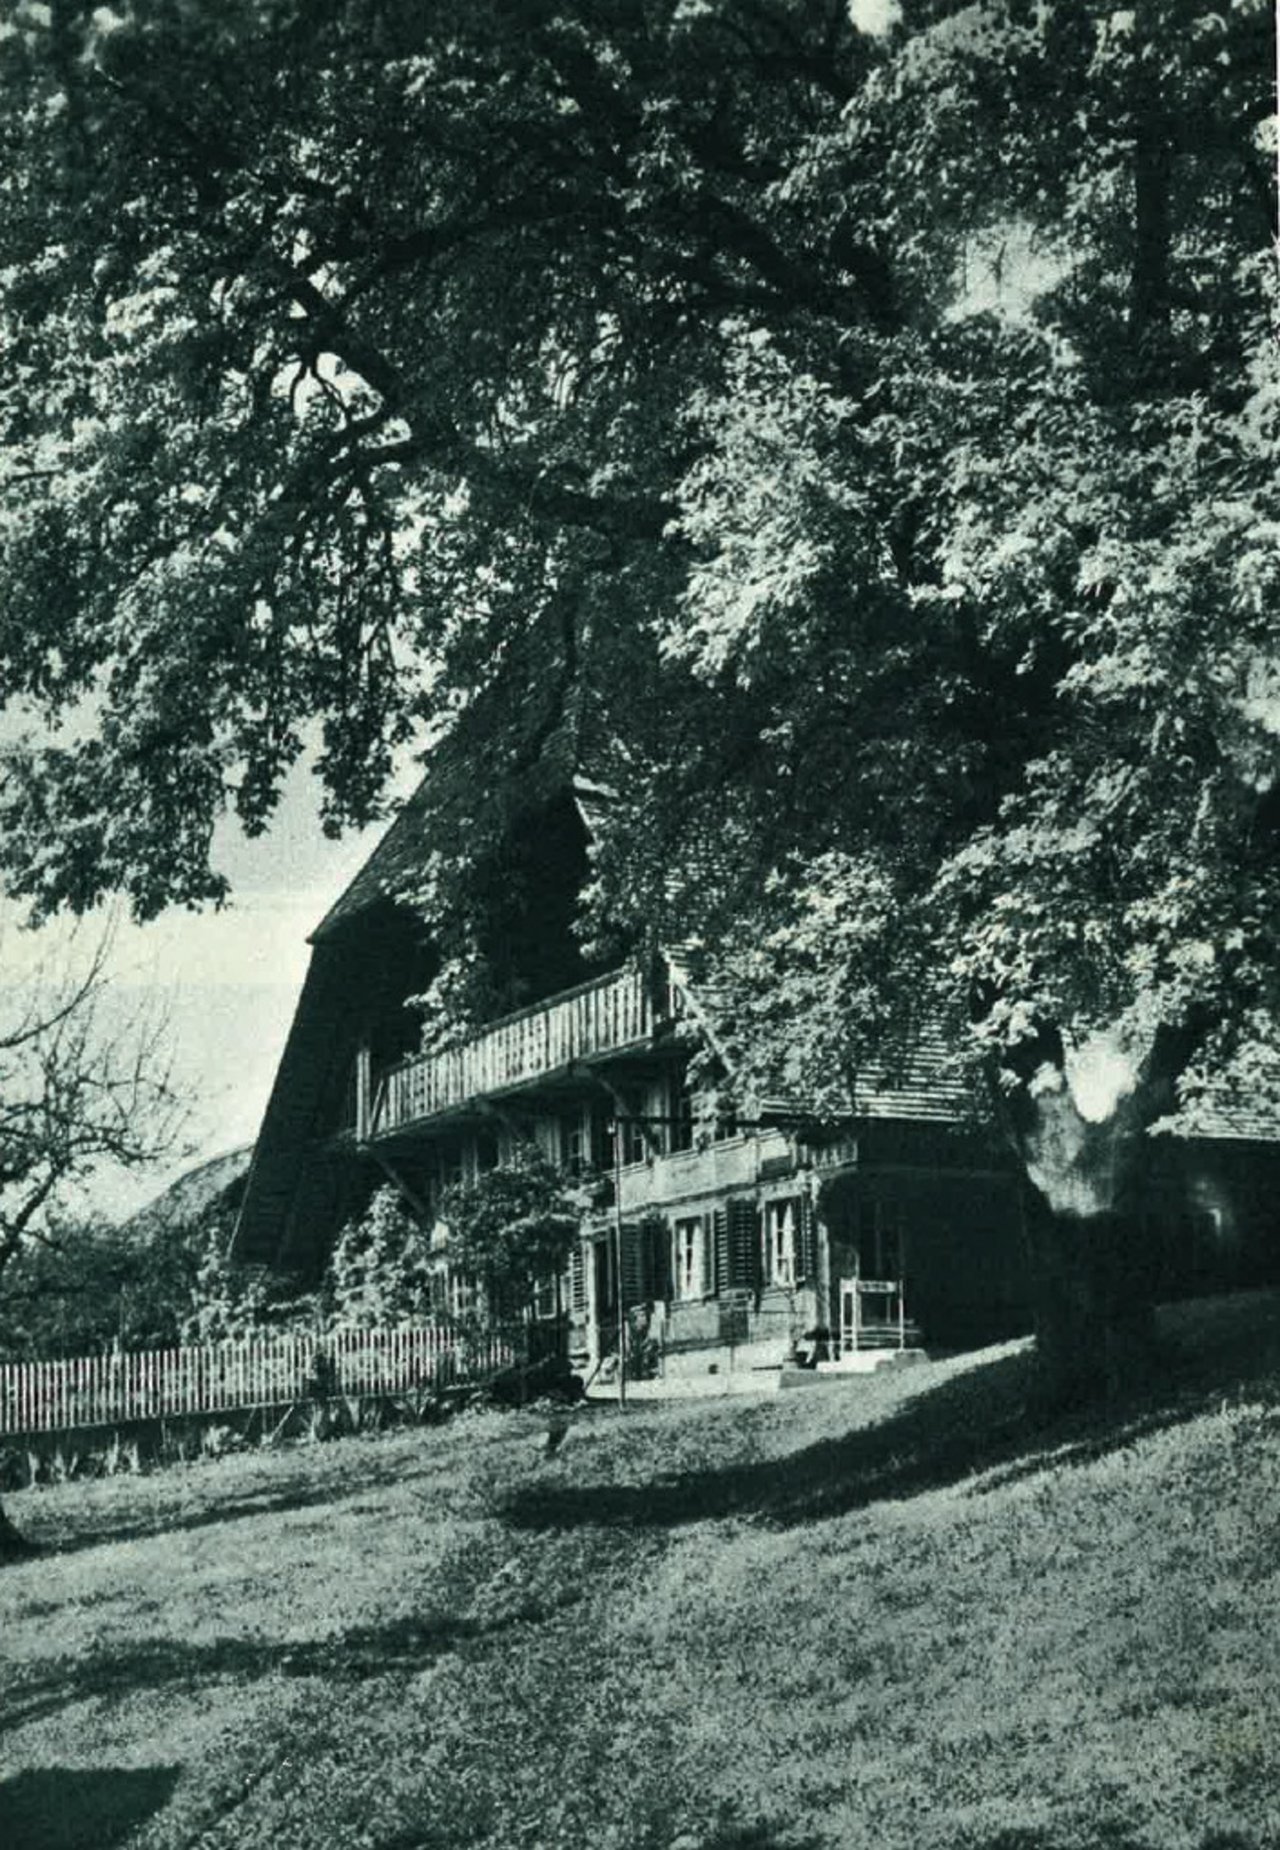 Das gigantische Dach ist typisch für die Berner Bauernhäuser, hier das Haus "Birnbaum". (Bild Schweizerischer Bauernverband)